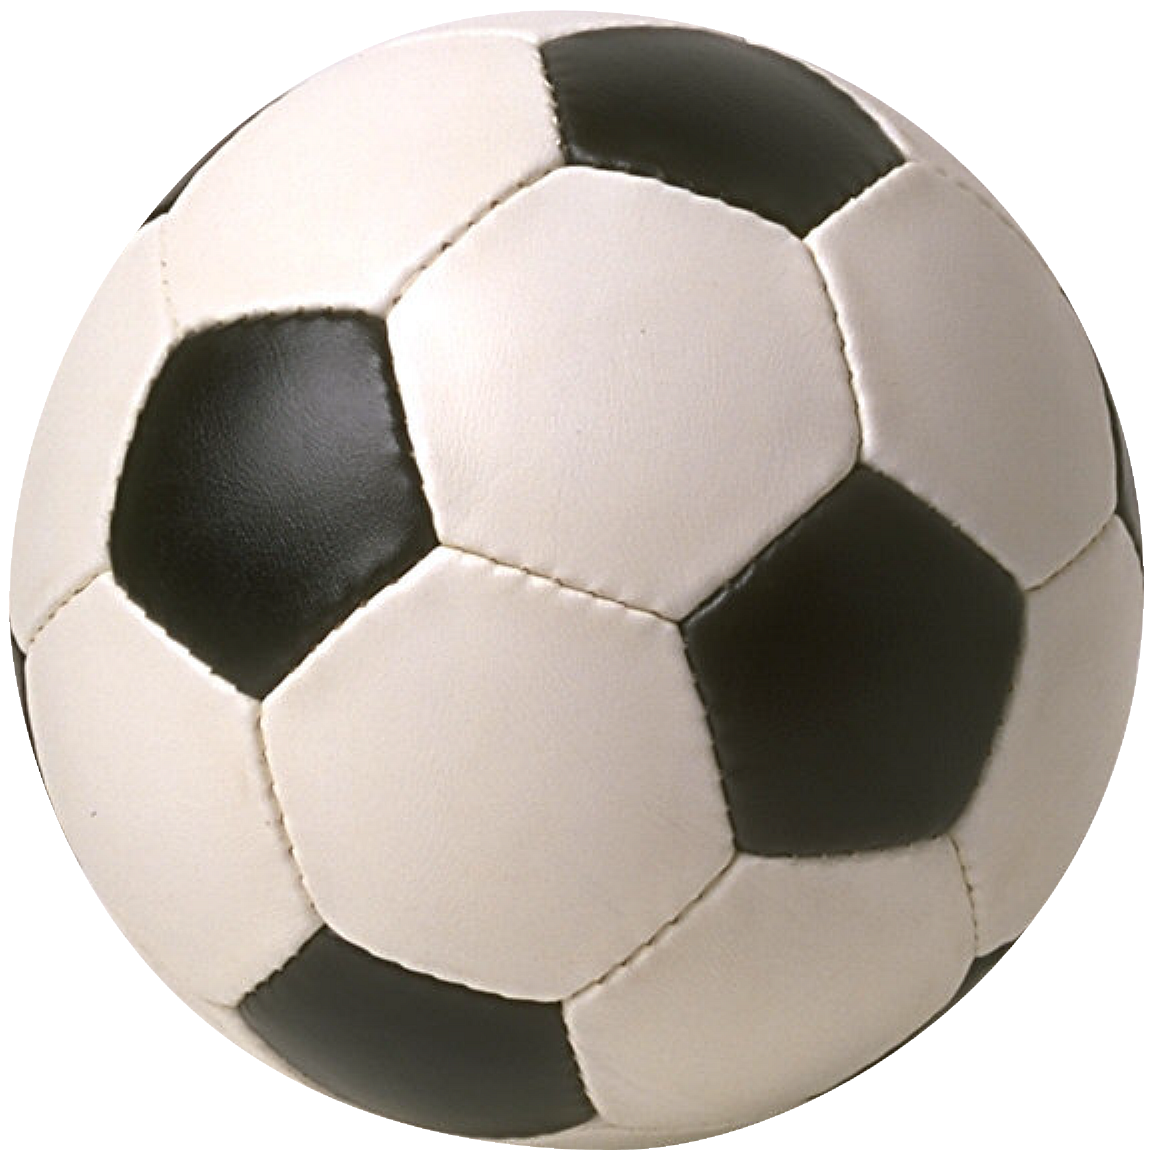 Balón de fútbol PNG